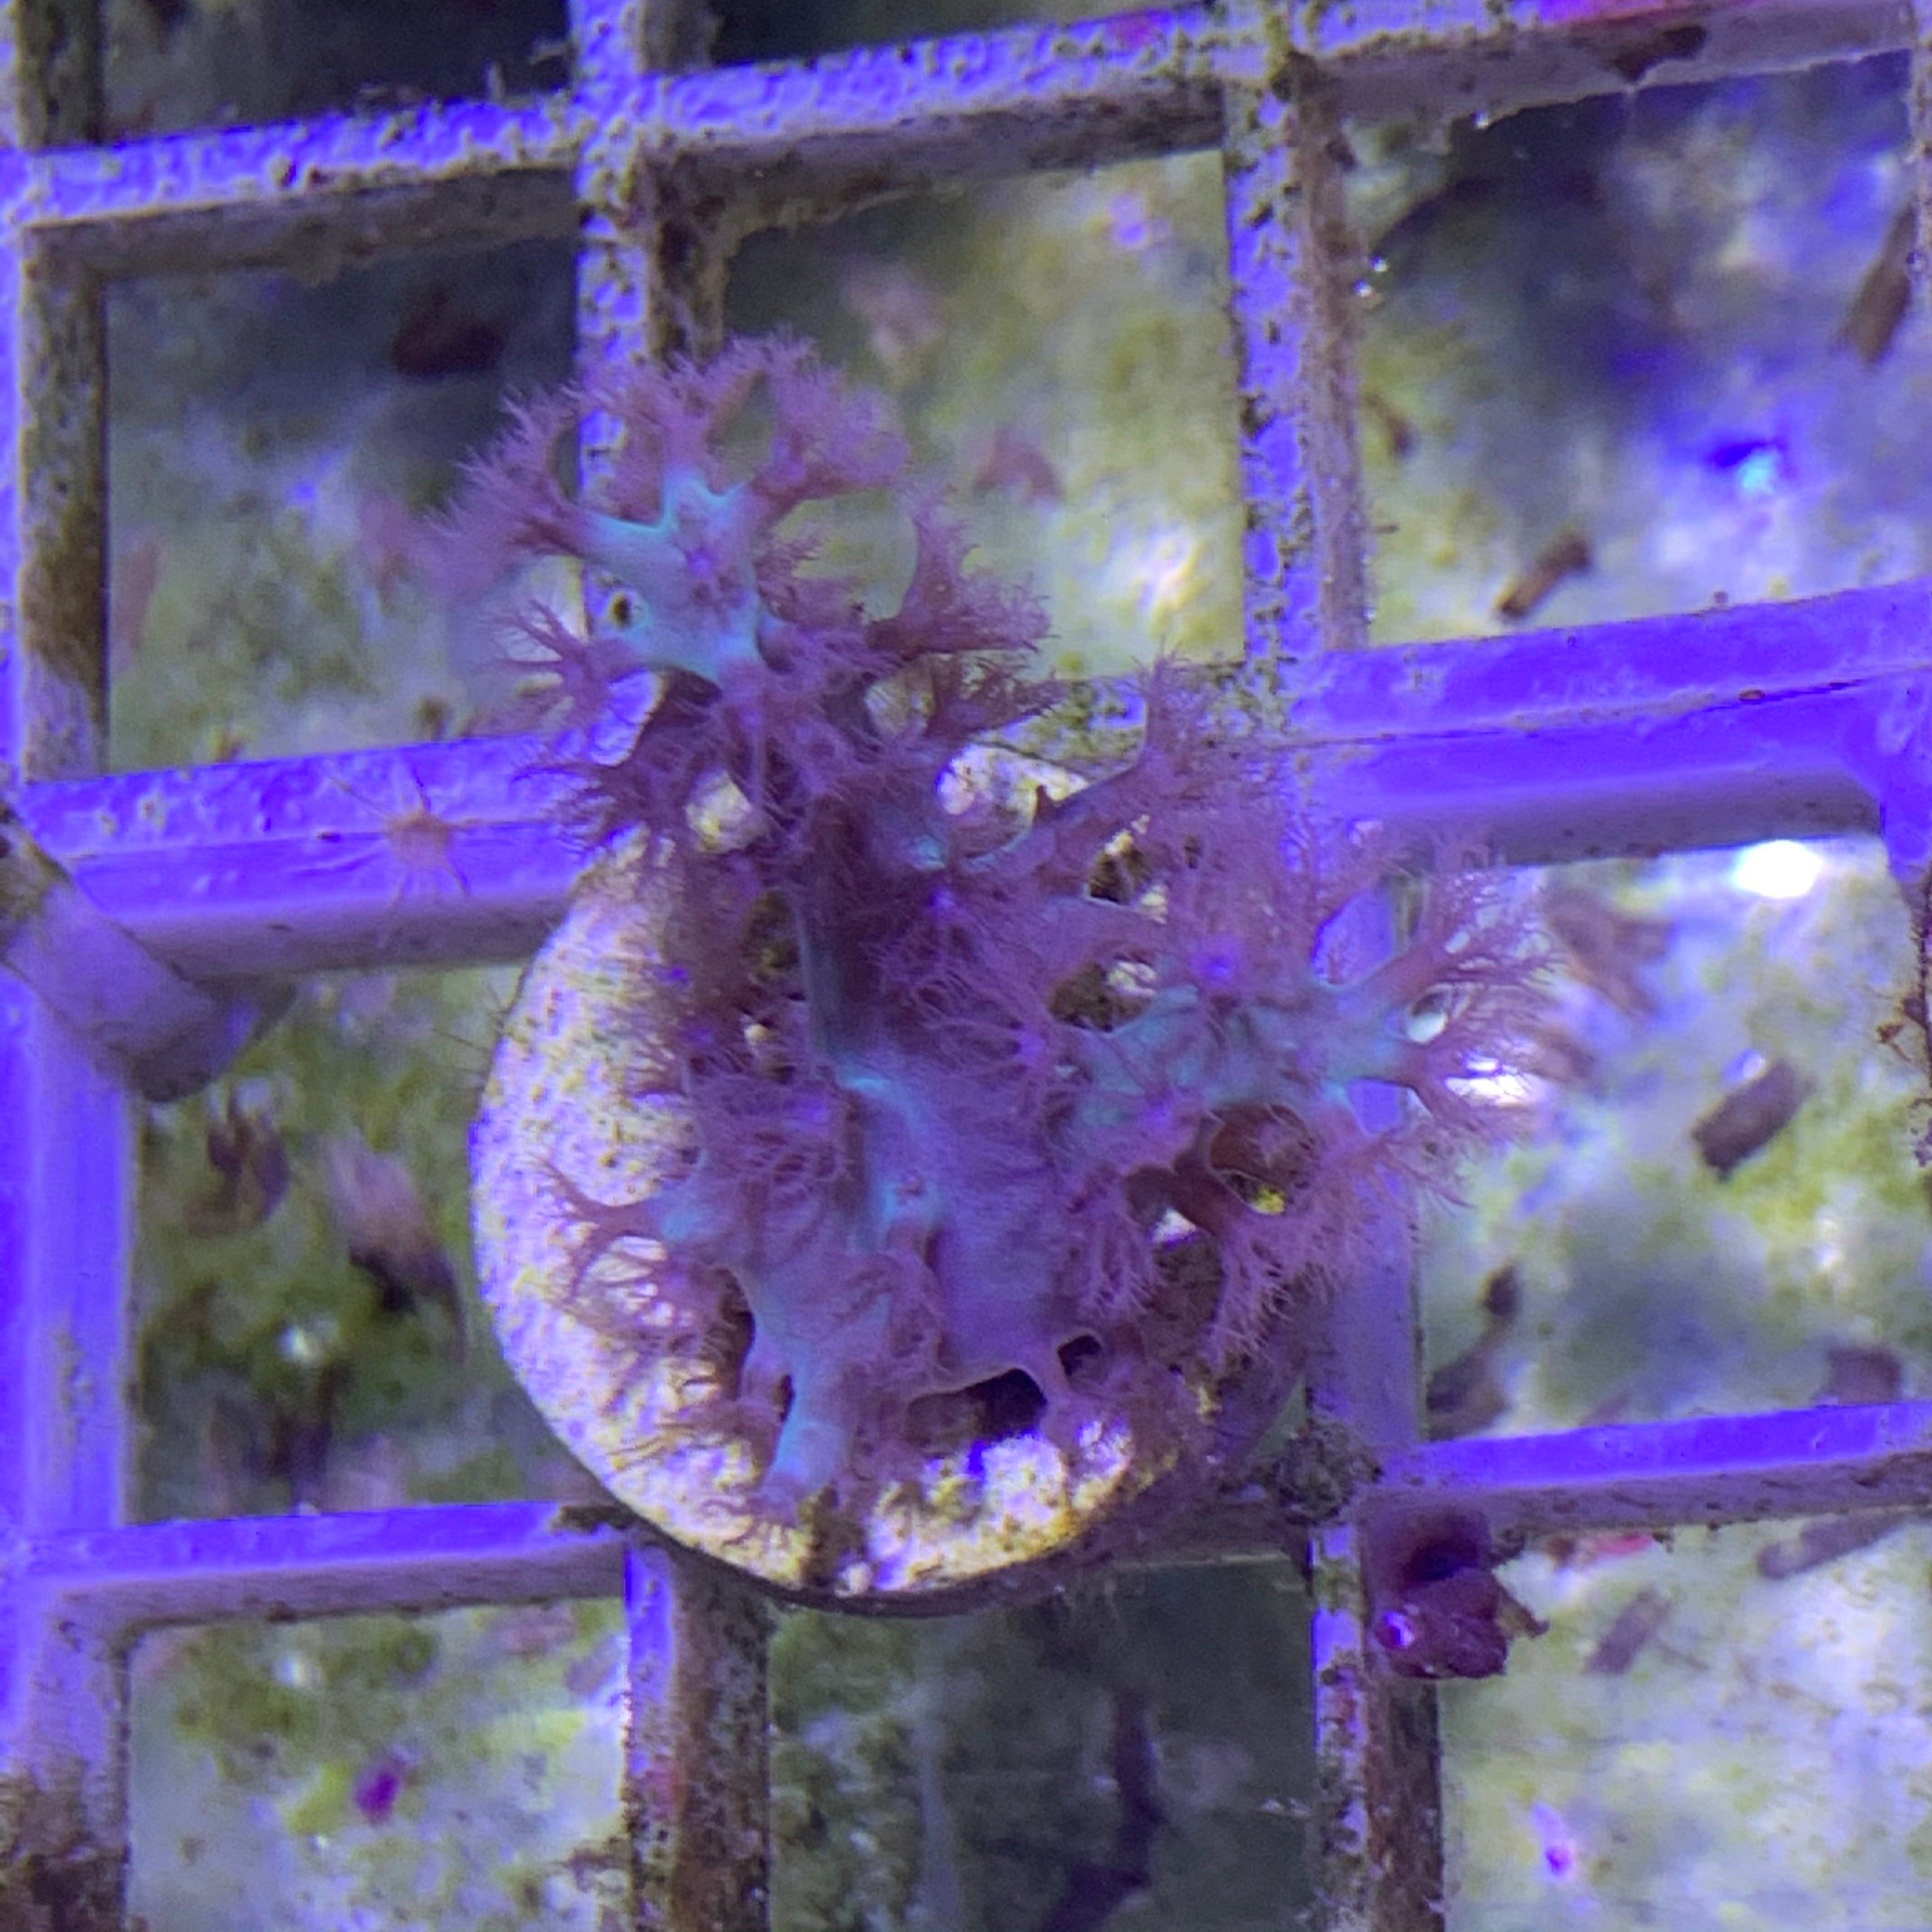 Aqua Blue Sinularia Leather Coral